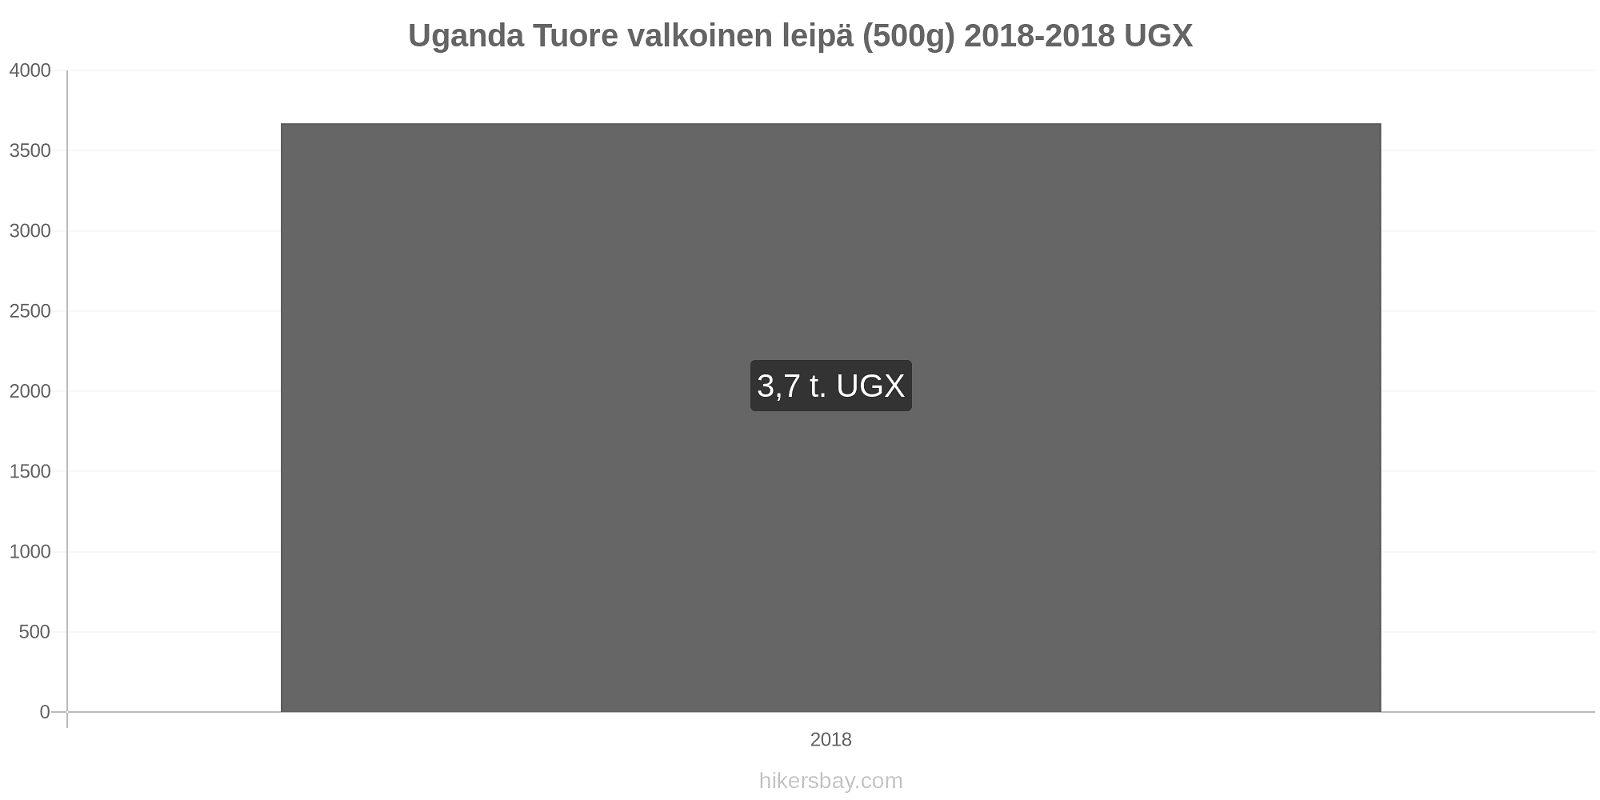 Uganda hintojen muutokset Tuore valkoinen leipä (500g) hikersbay.com